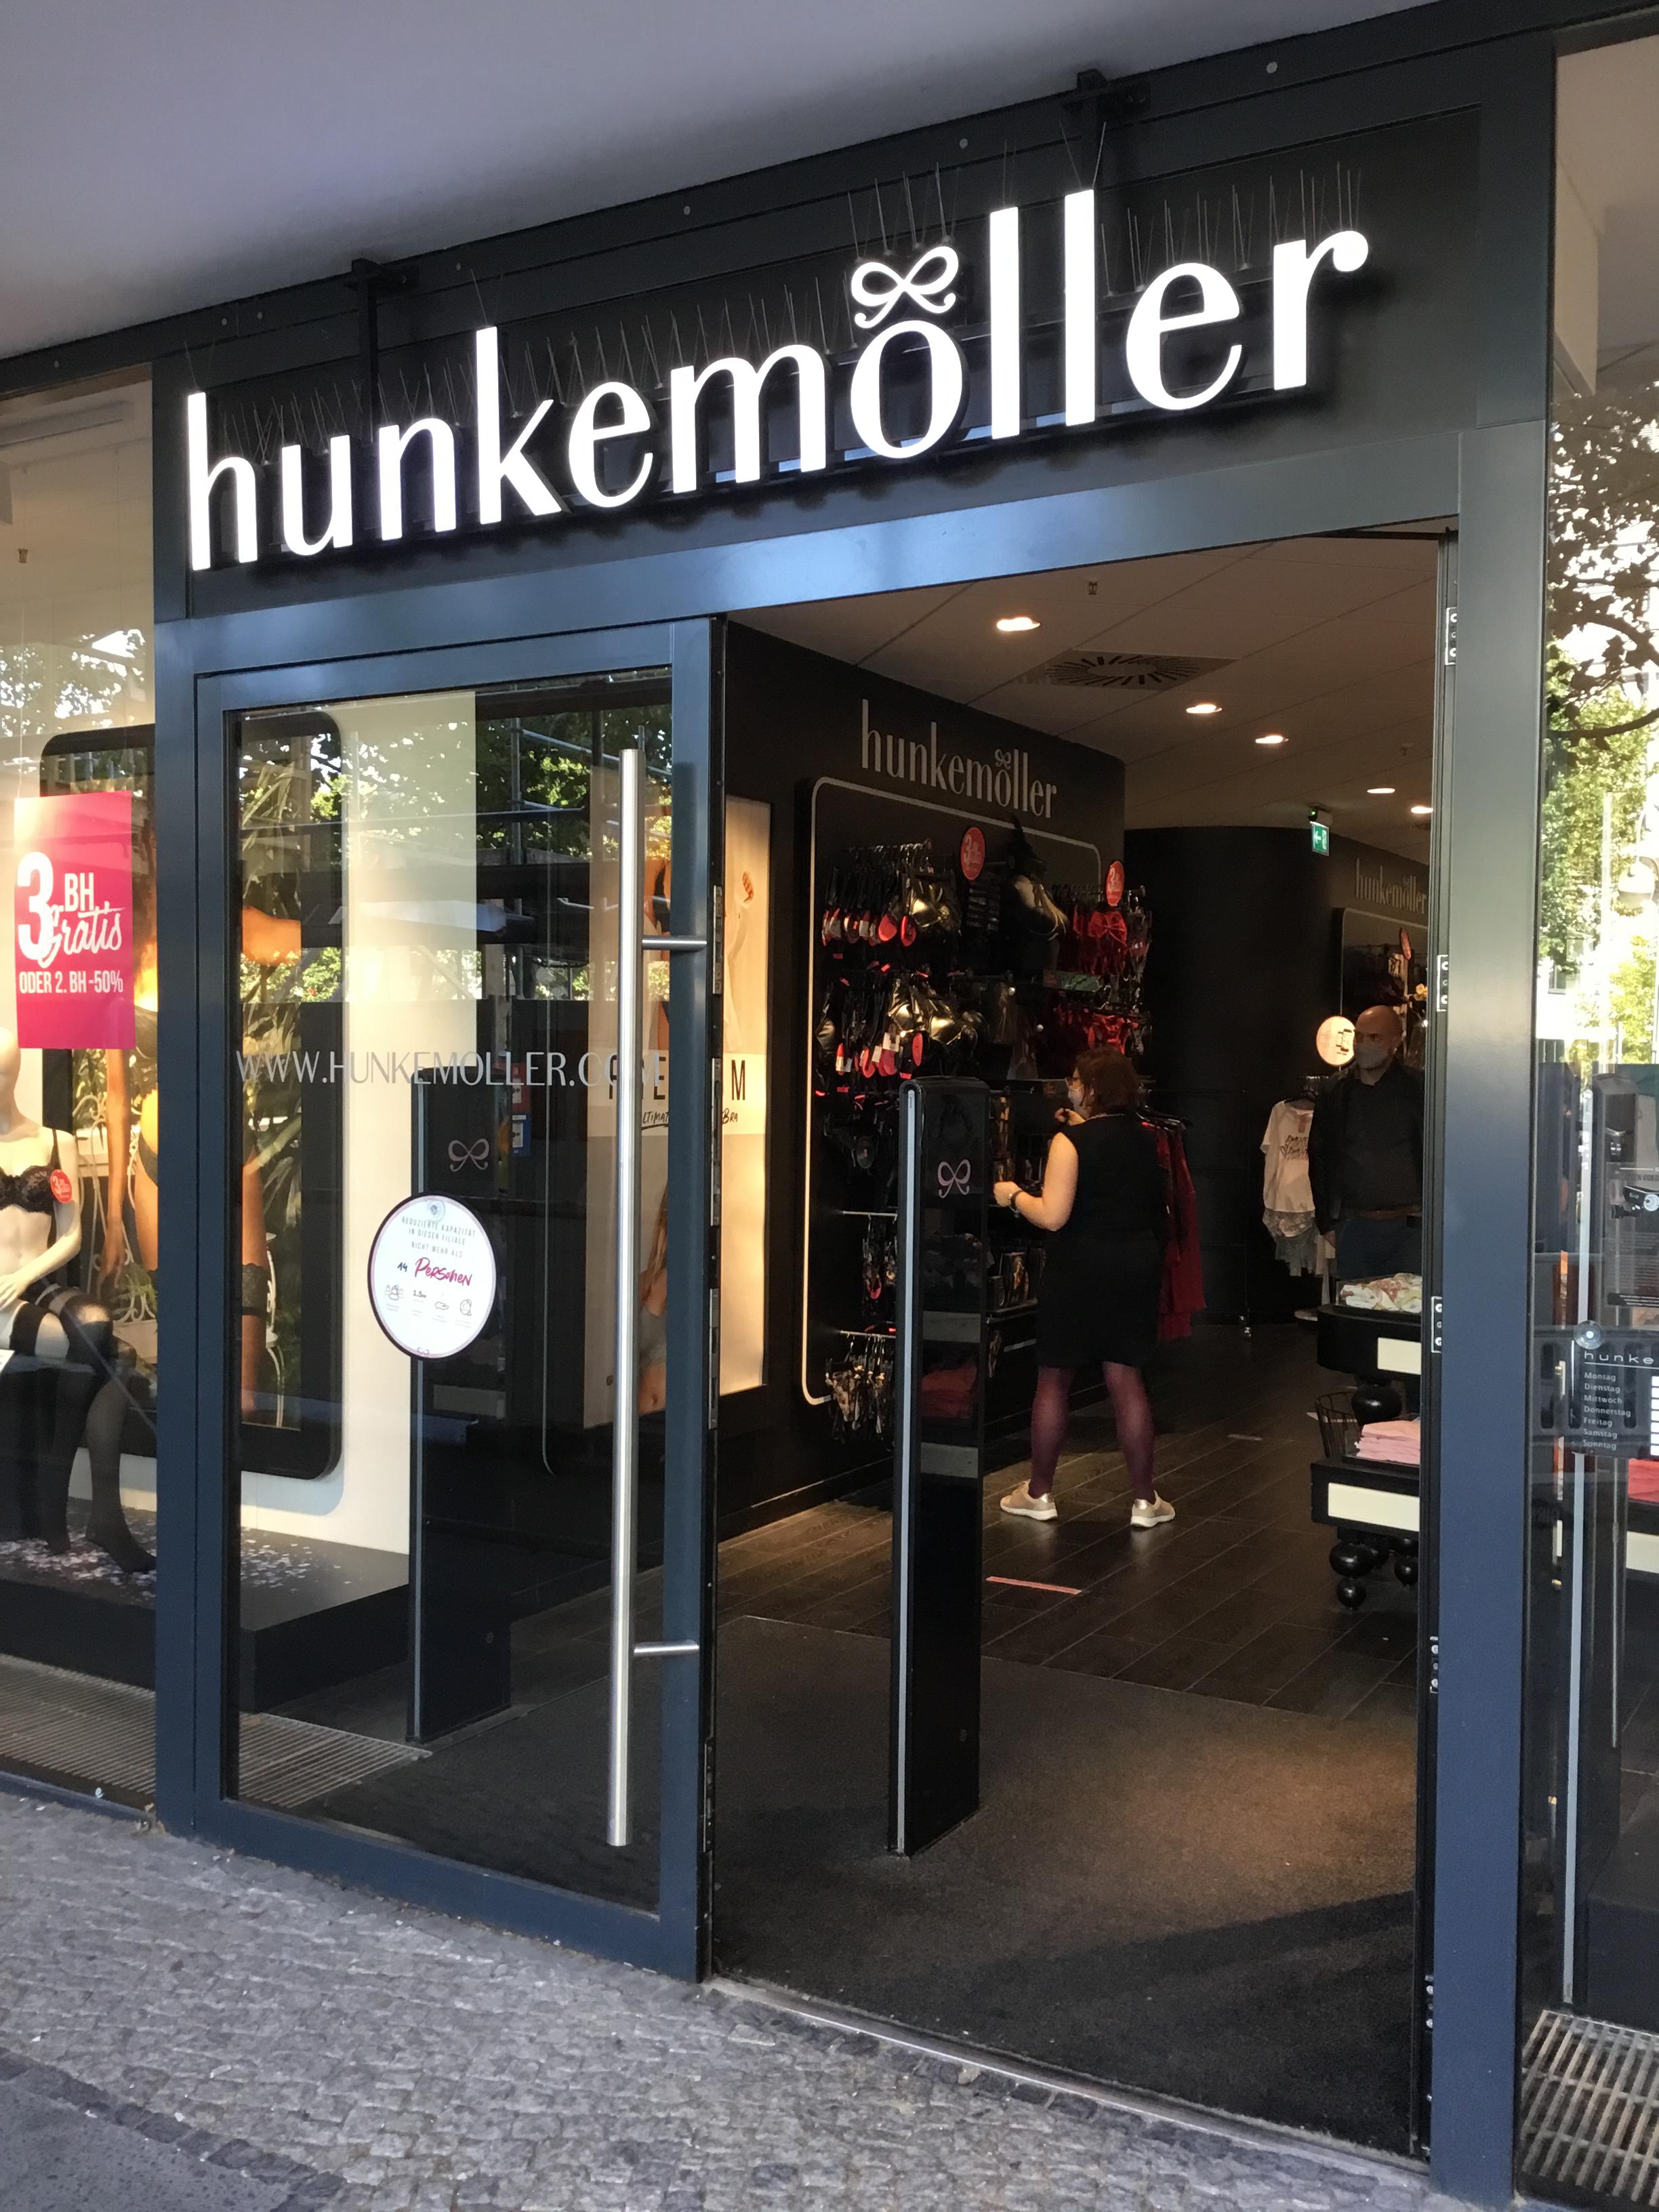 Dessous von Hunkemöller, Tauentzienstrasse 9-12 in Berlin